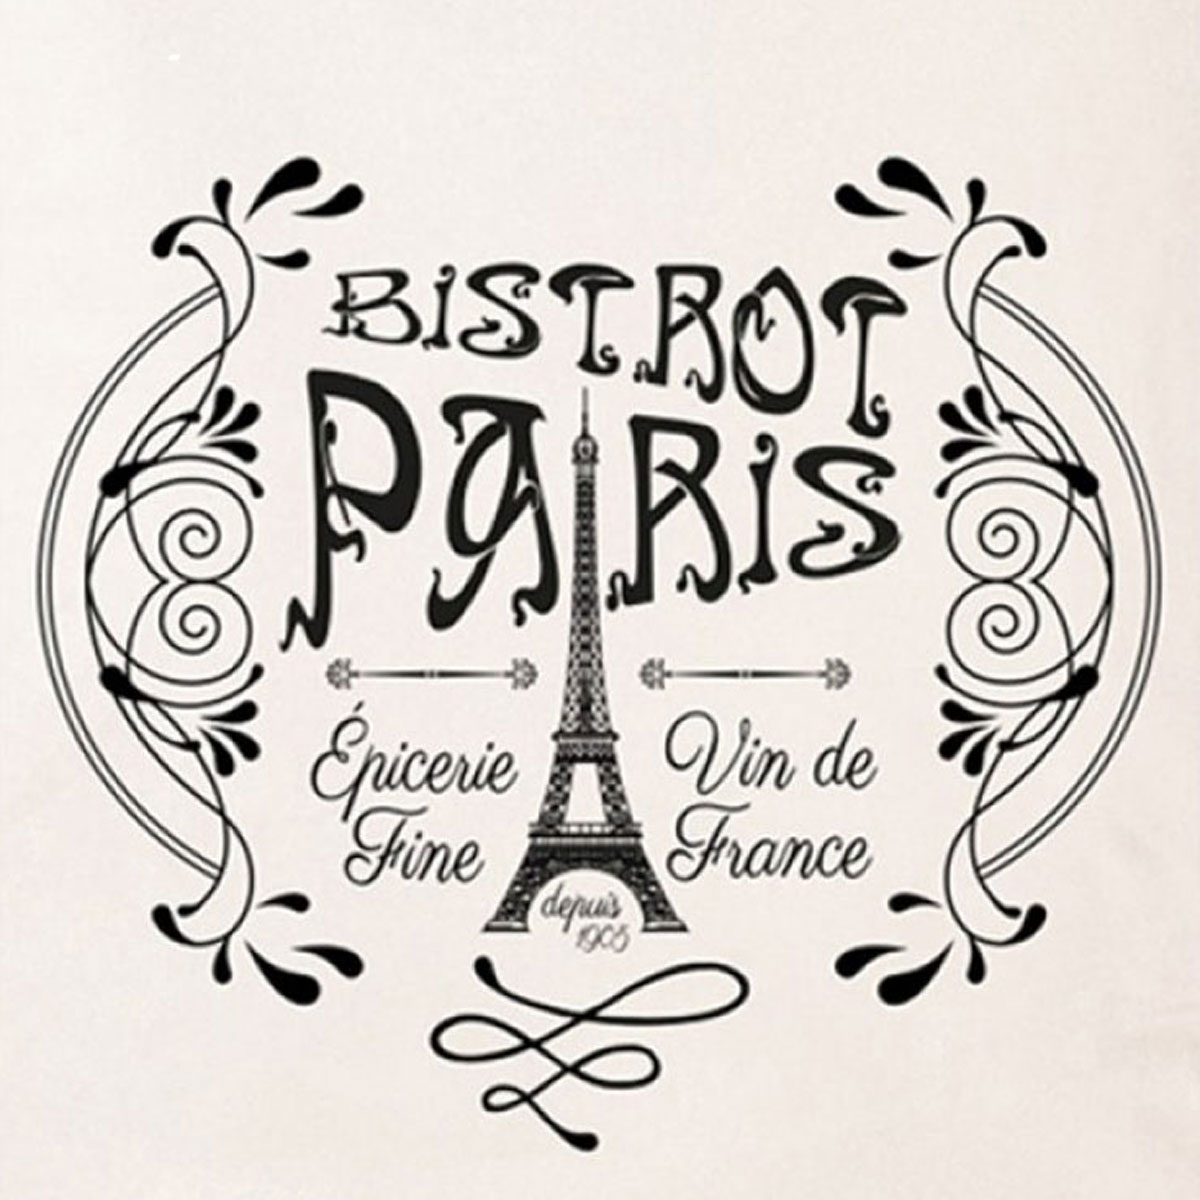 Paris Bistrot adult apron